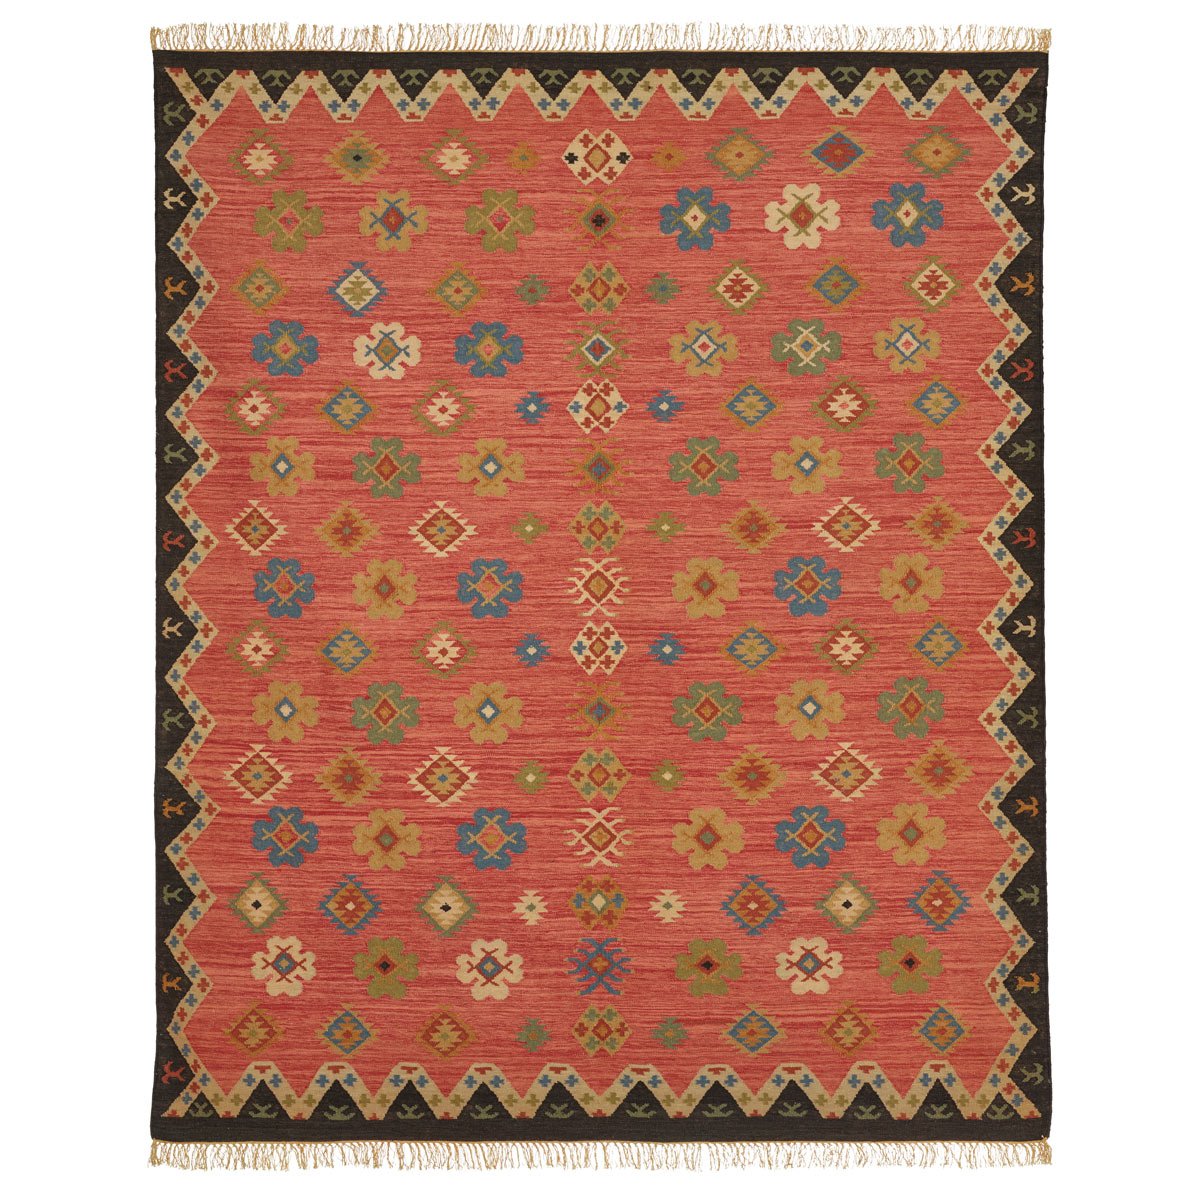 OKA eclectic rug - Liyanah Home